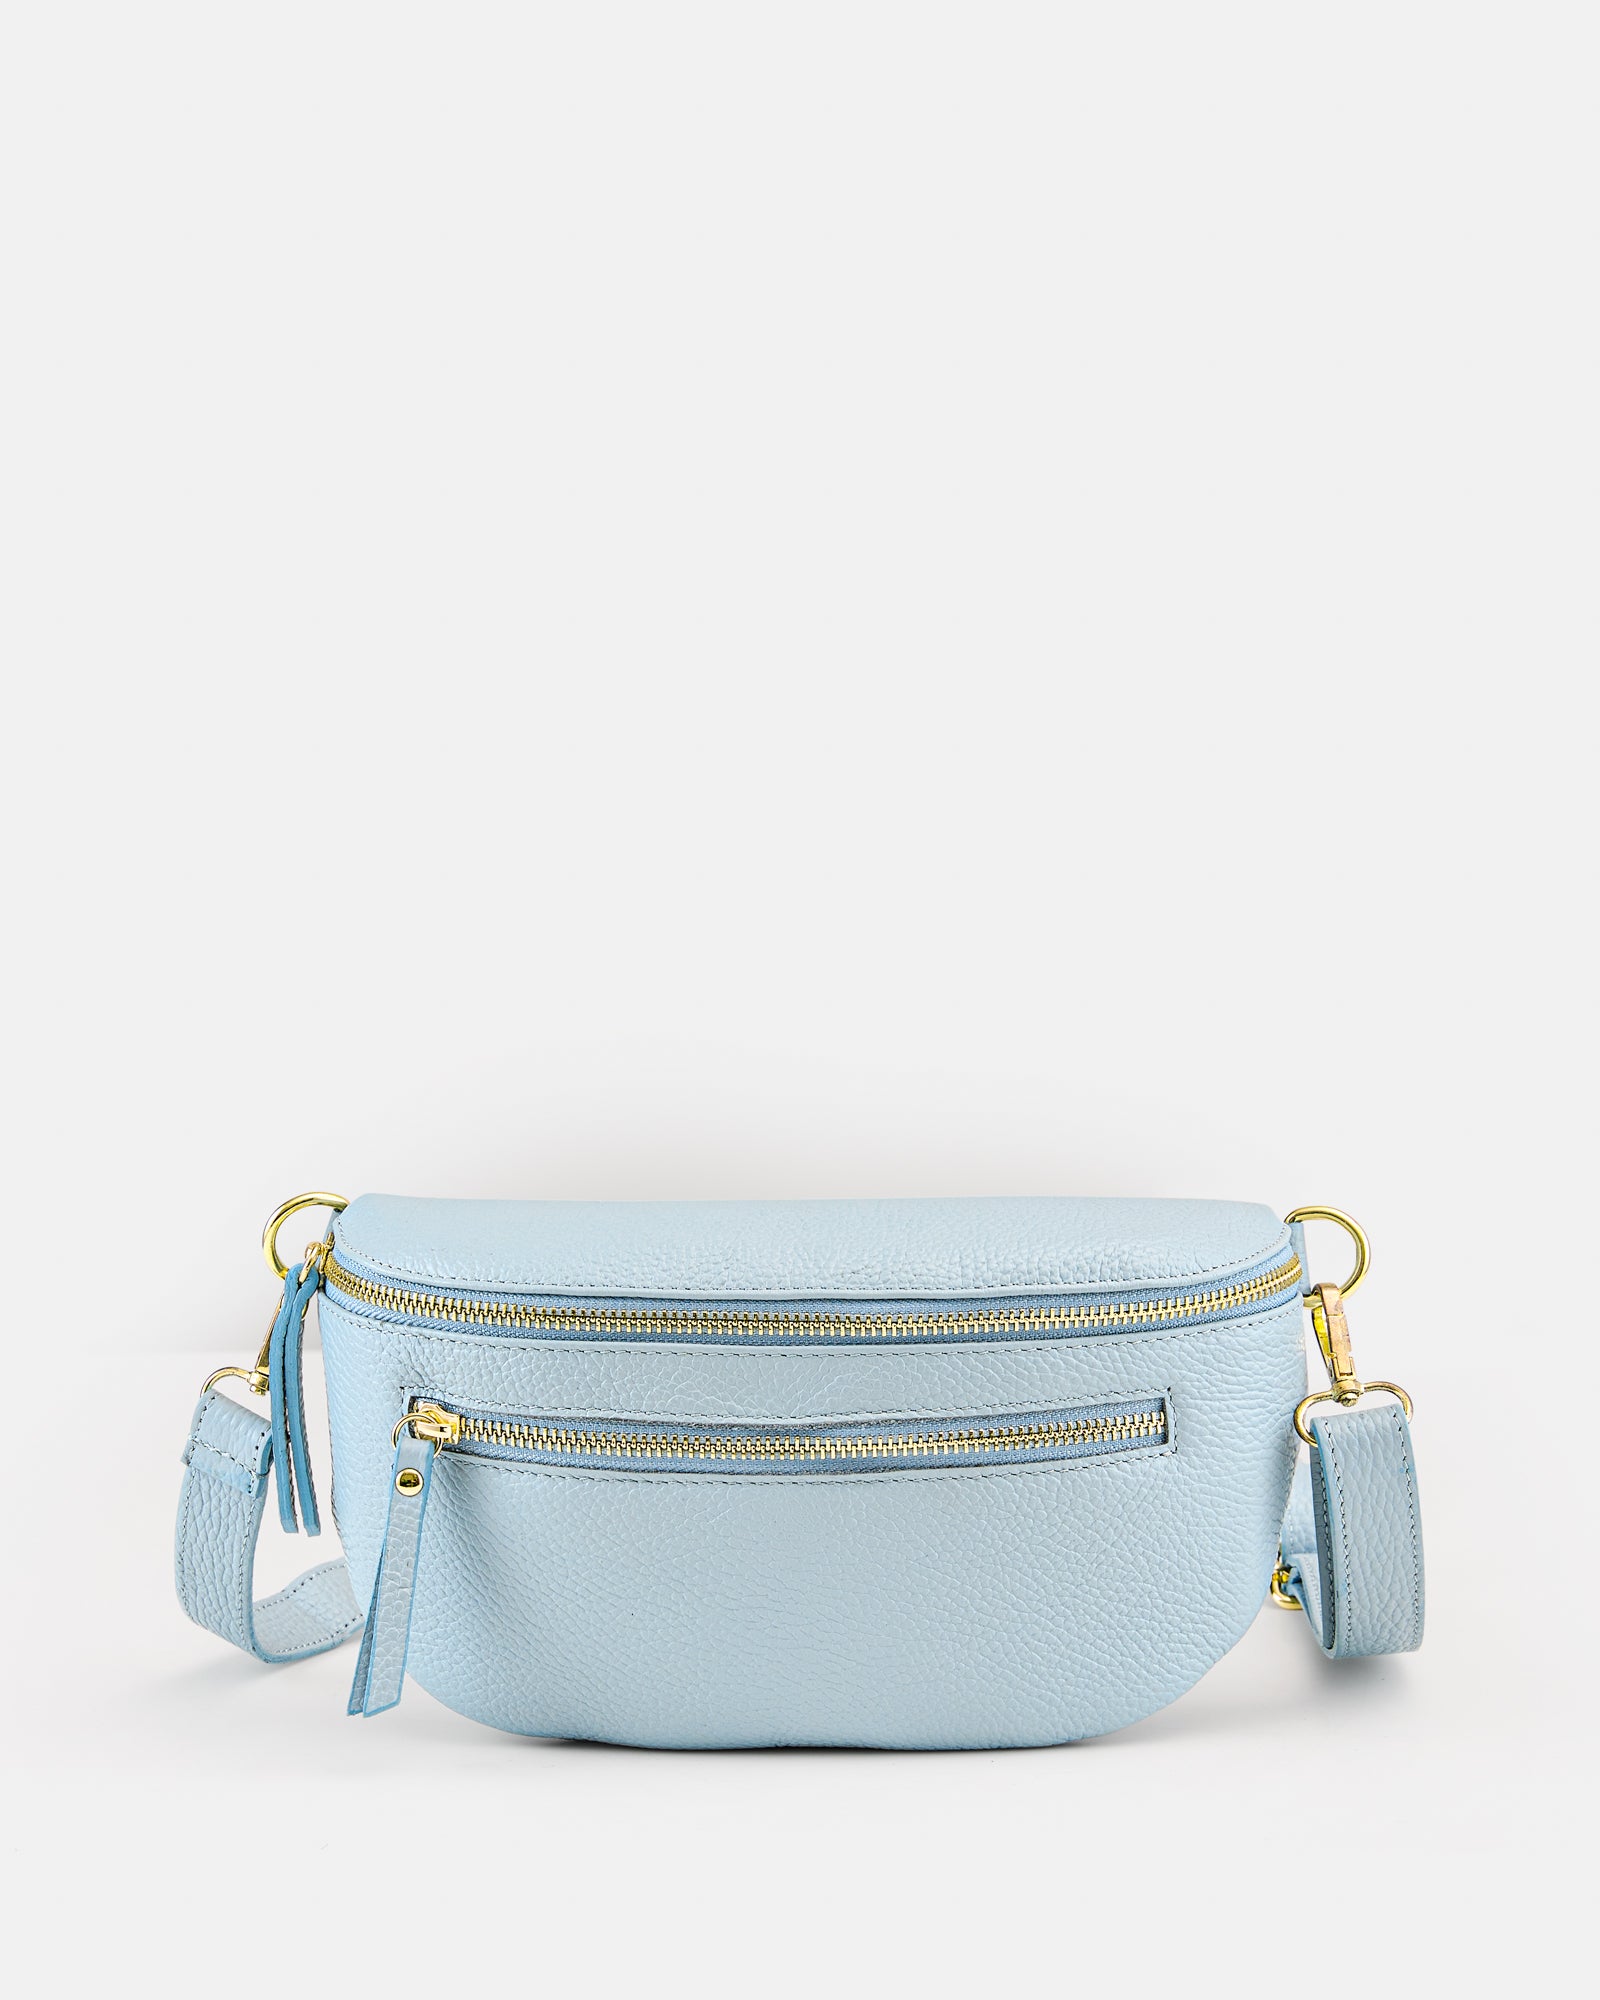 Celeste Bags & Handbags for Women for sale | eBay